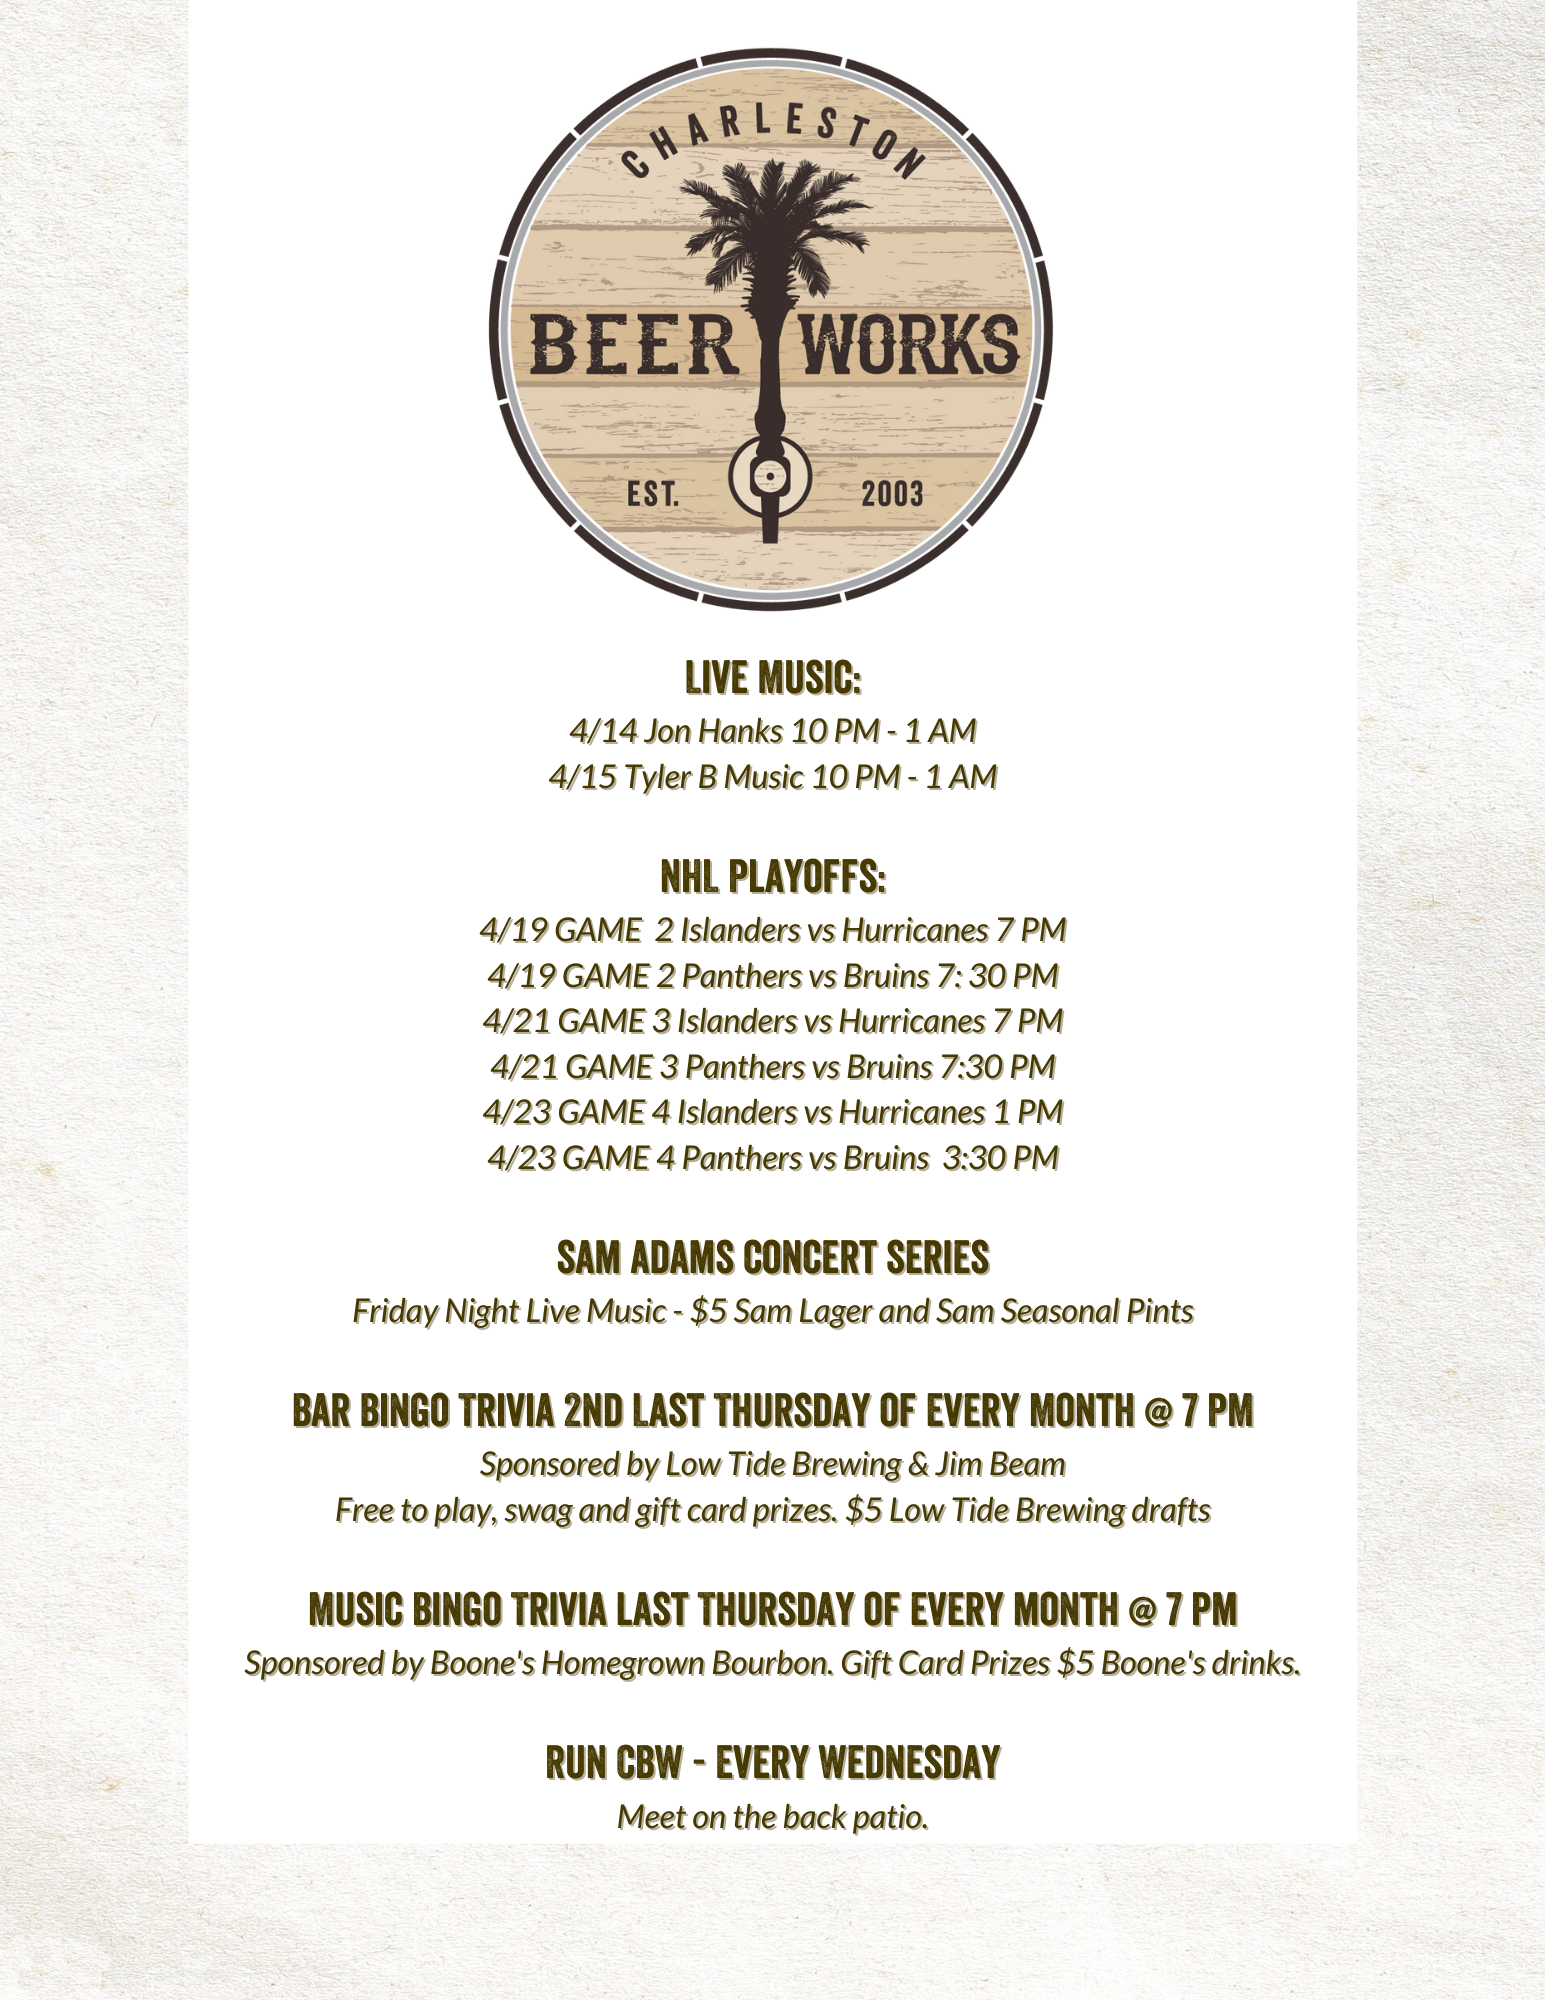 Charleston Beer Works Events